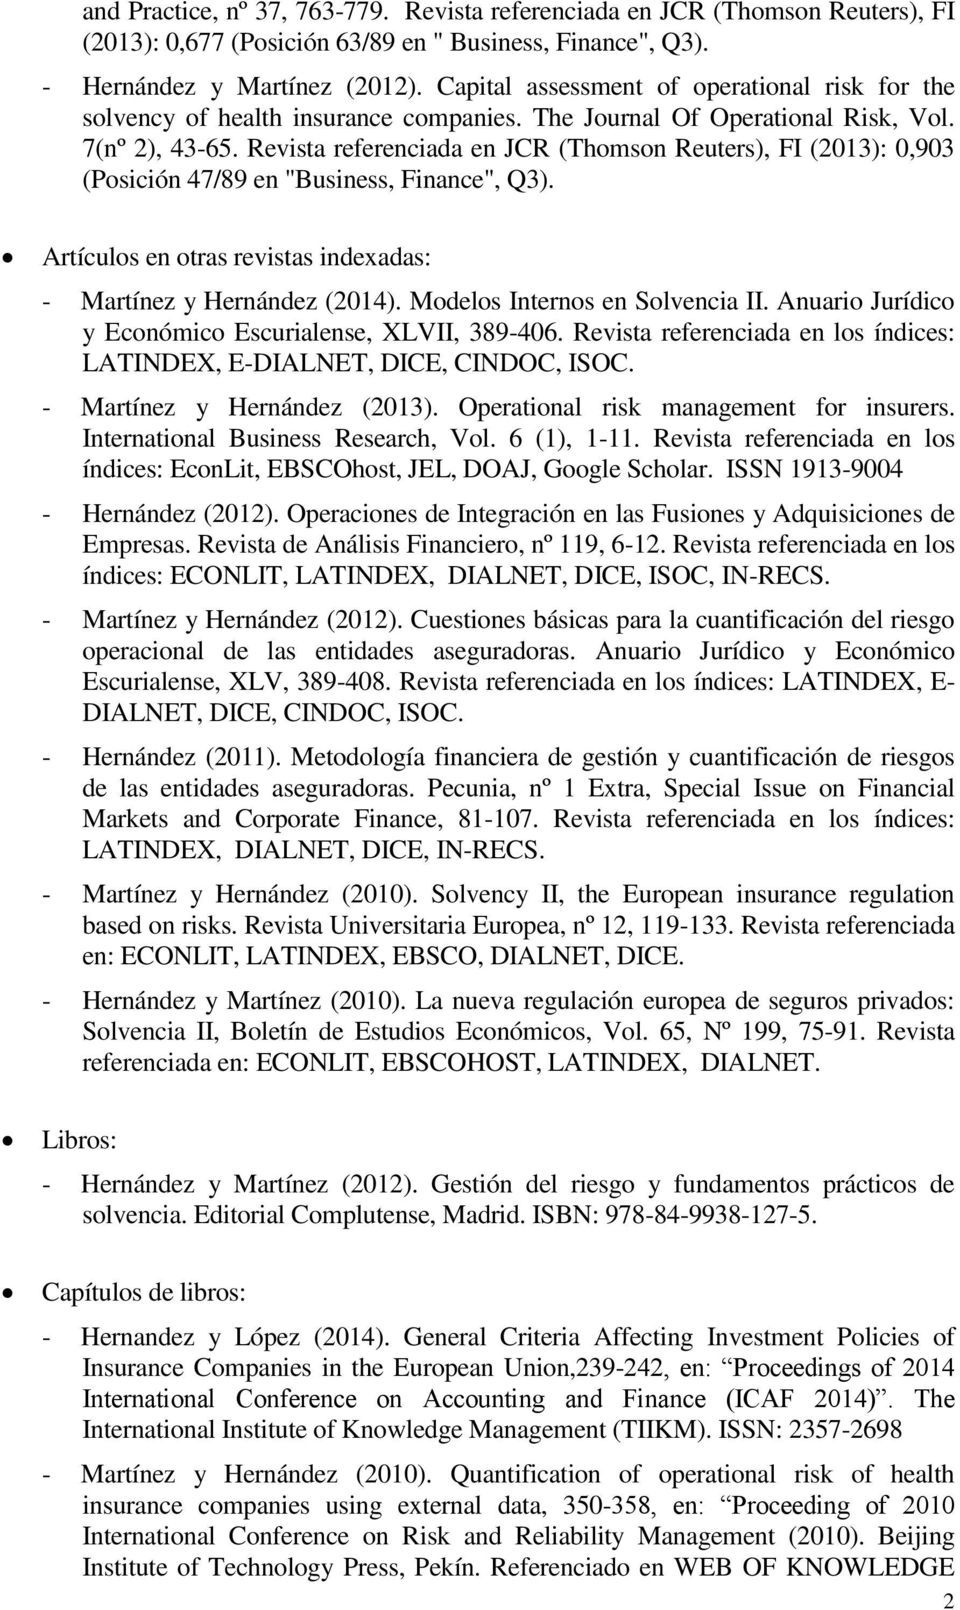 Revista referenciada en JCR (Thomson Reuters), FI (2013): 0,903 (Posición 47/89 en "Business, Finance", Q3). Artículos en otras revistas indexadas: - Martínez y Hernández (2014).